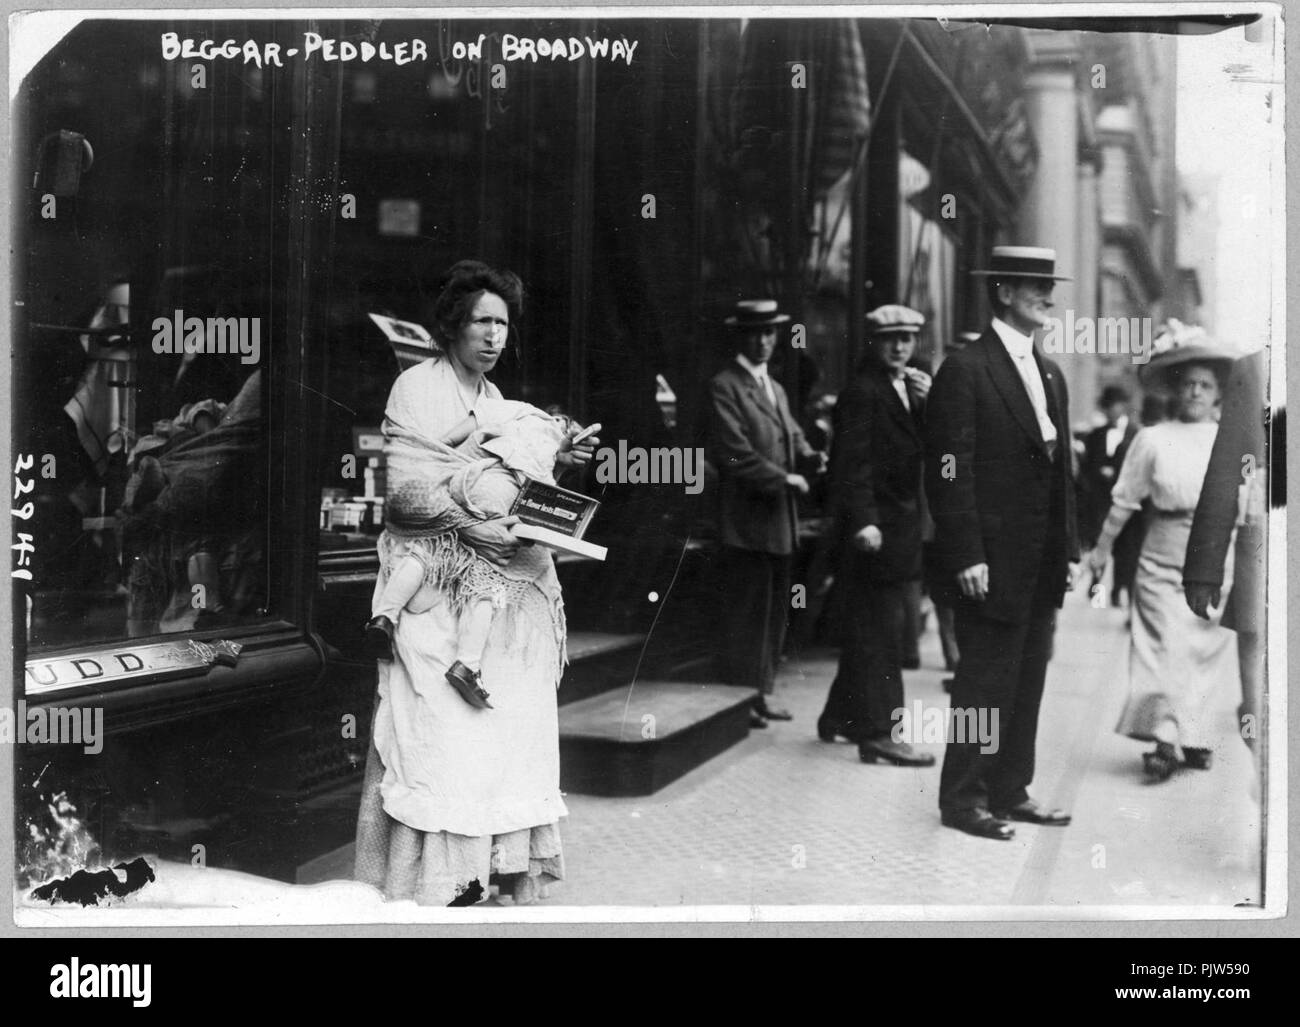 Bettler - Hausierer am Broadway Stockfoto